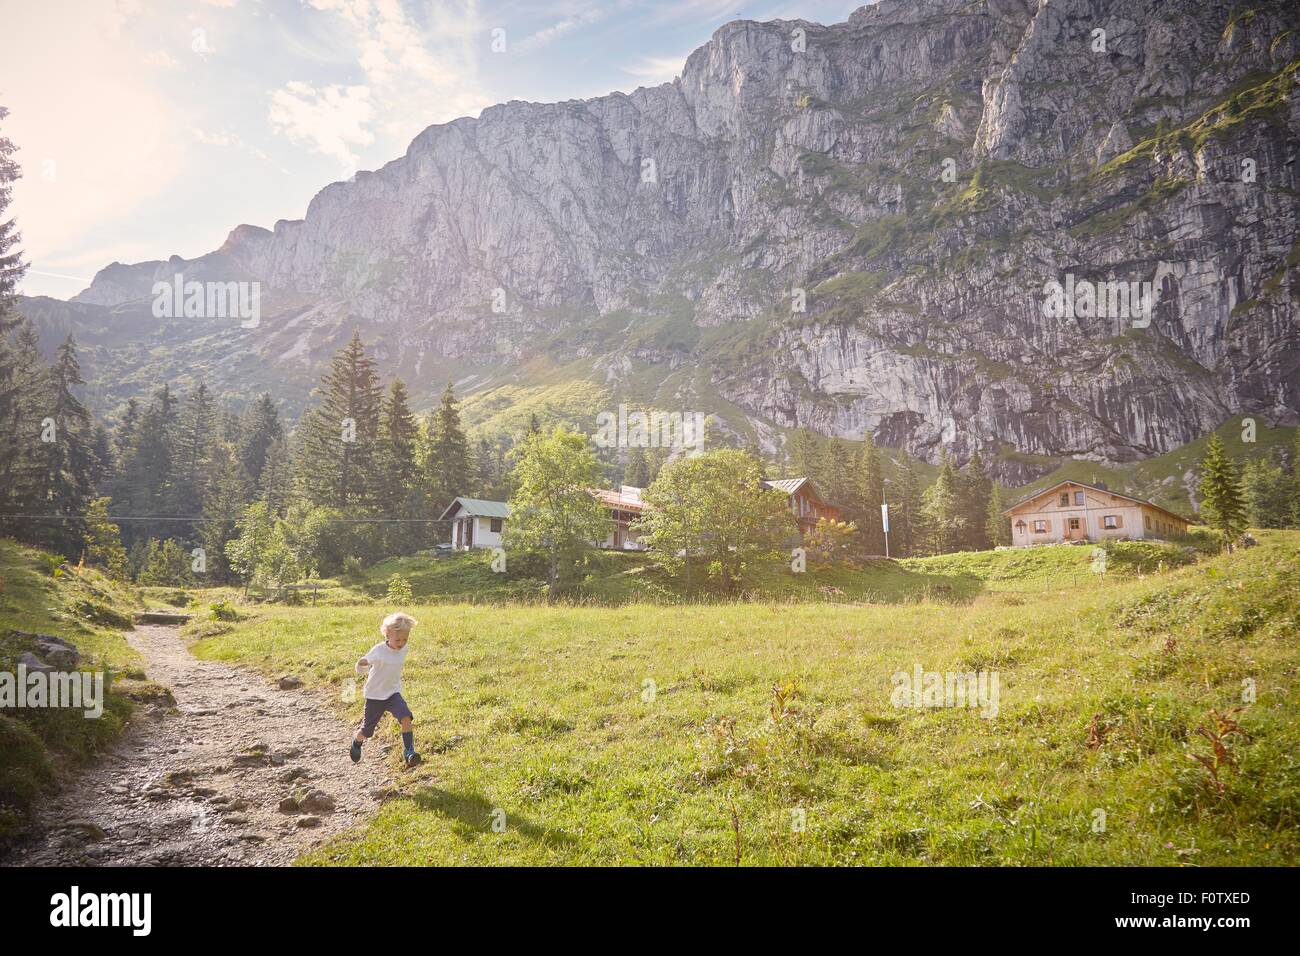 Junge läuft in ländlicher Umgebung, Benediktbeuern, Bayern, Deutschland Stockfoto